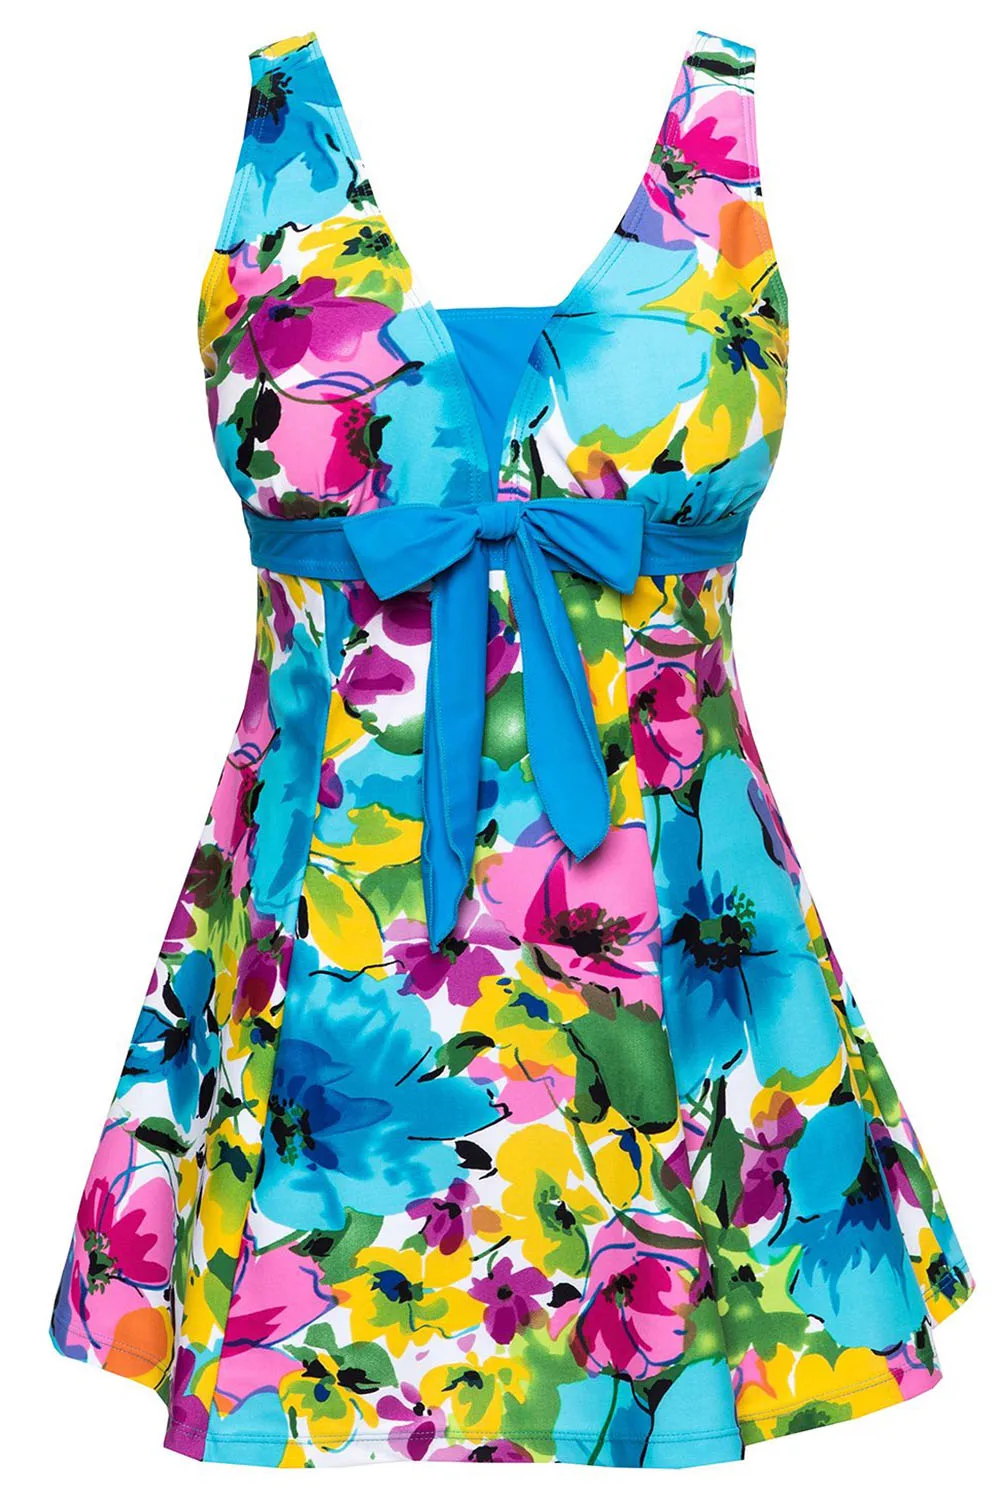 Женская одежда для плавания, купальный костюм, купальник с пуш-ап, Цельный купальник, Голубое озеро